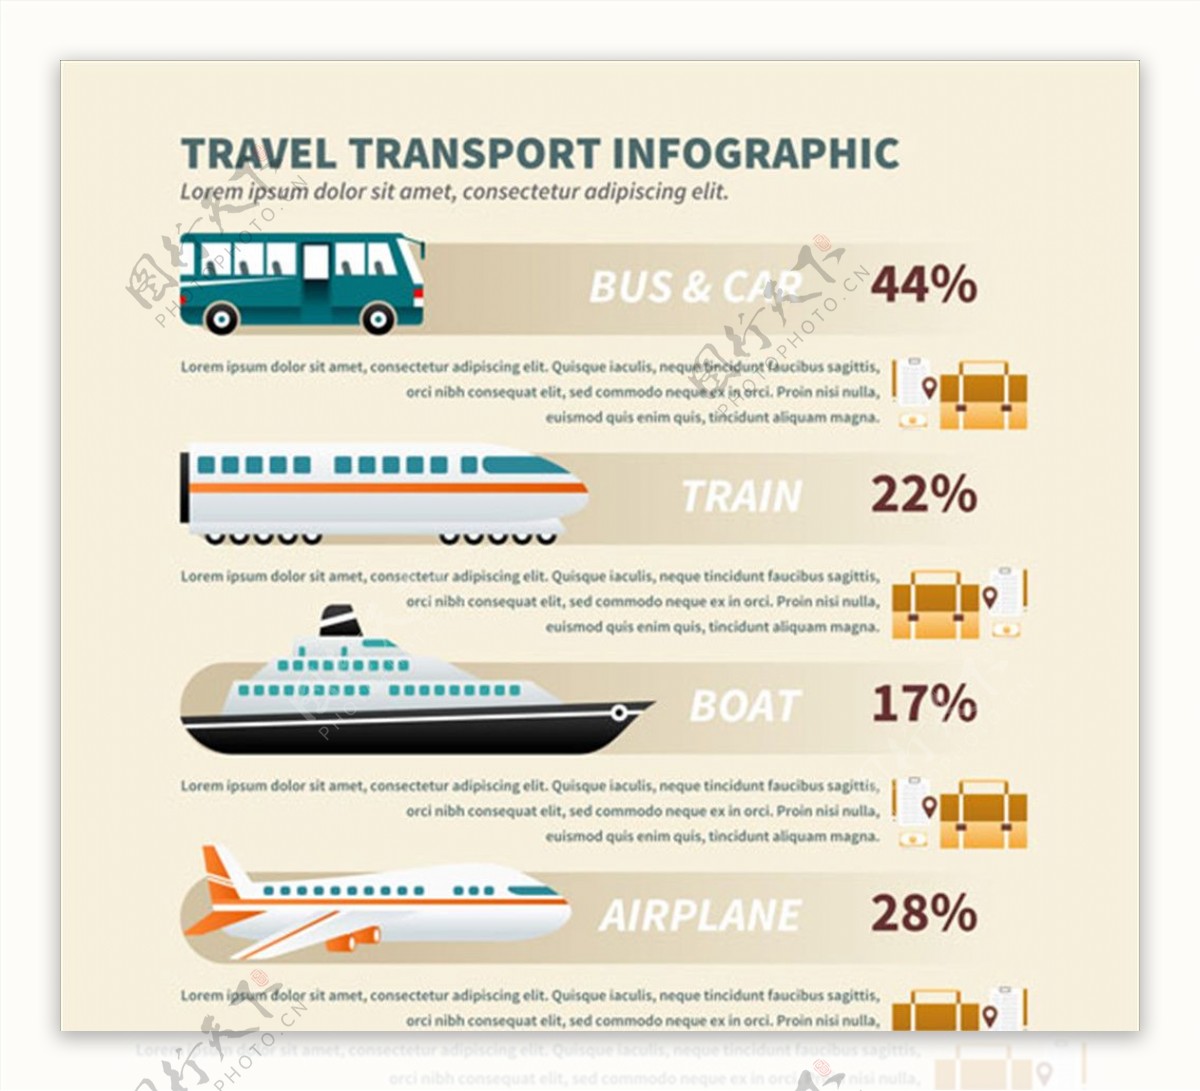 旅游运输信息图设计